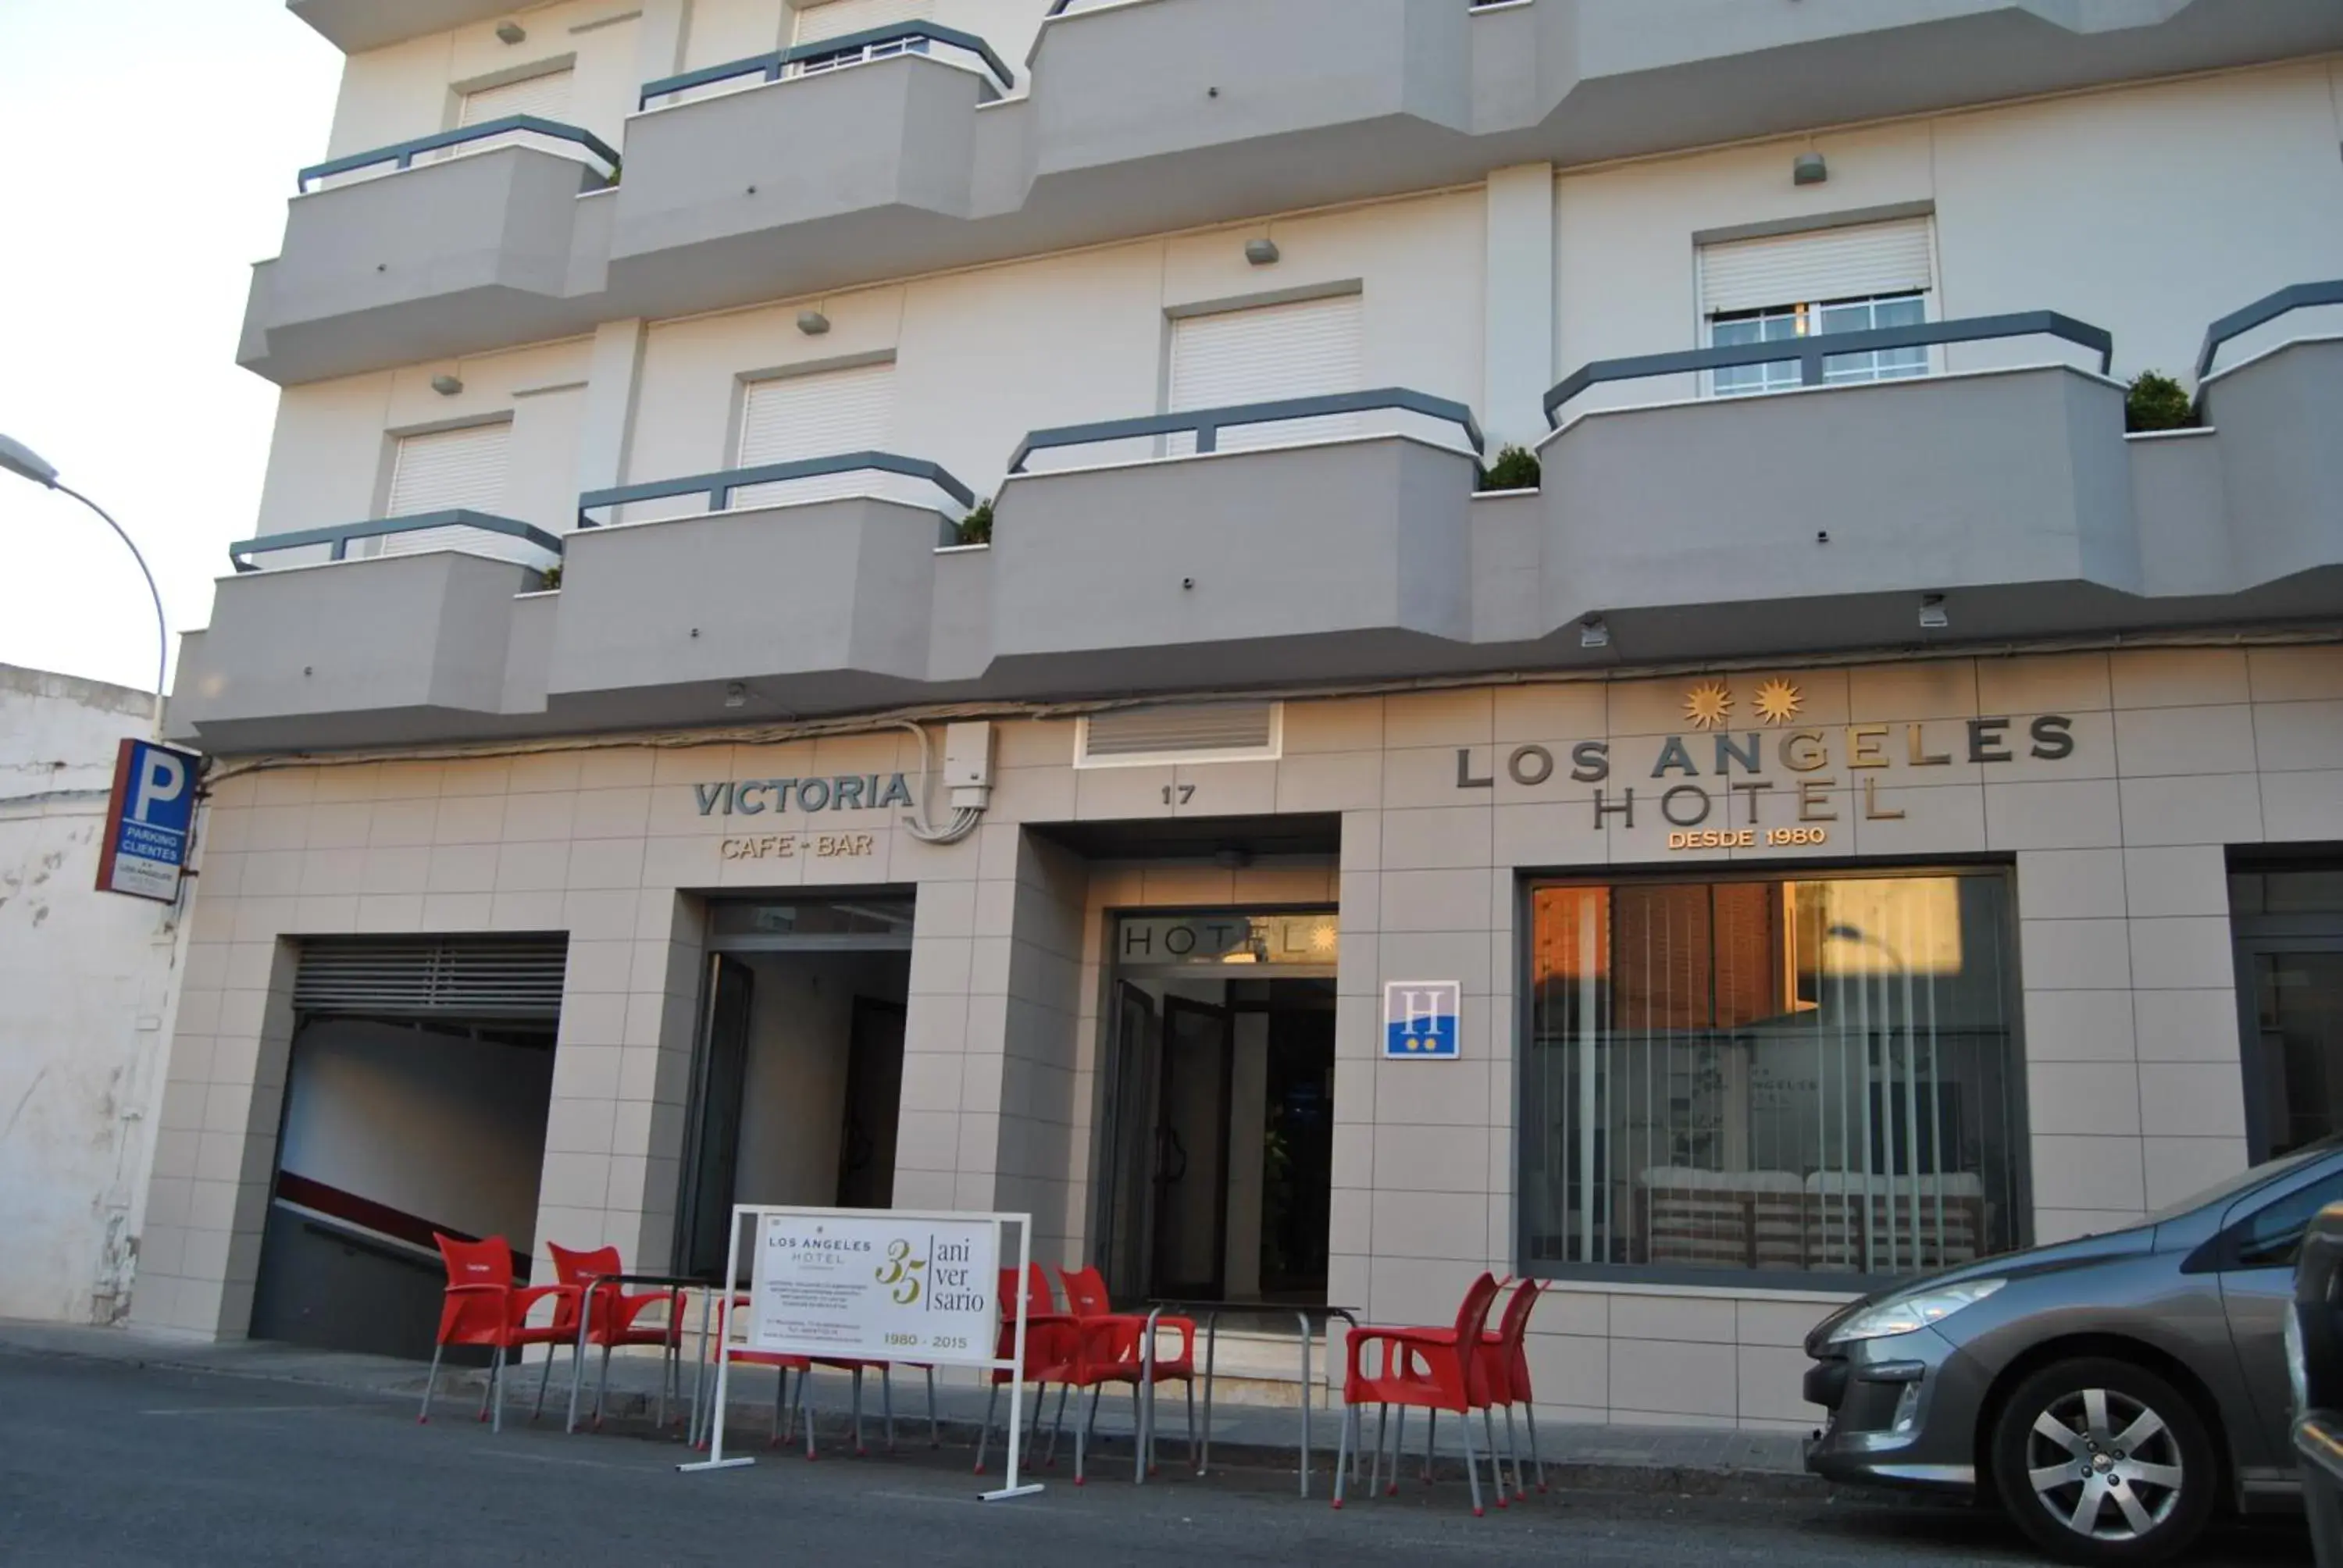 Property building, Facade/Entrance in Hotel Los Angeles